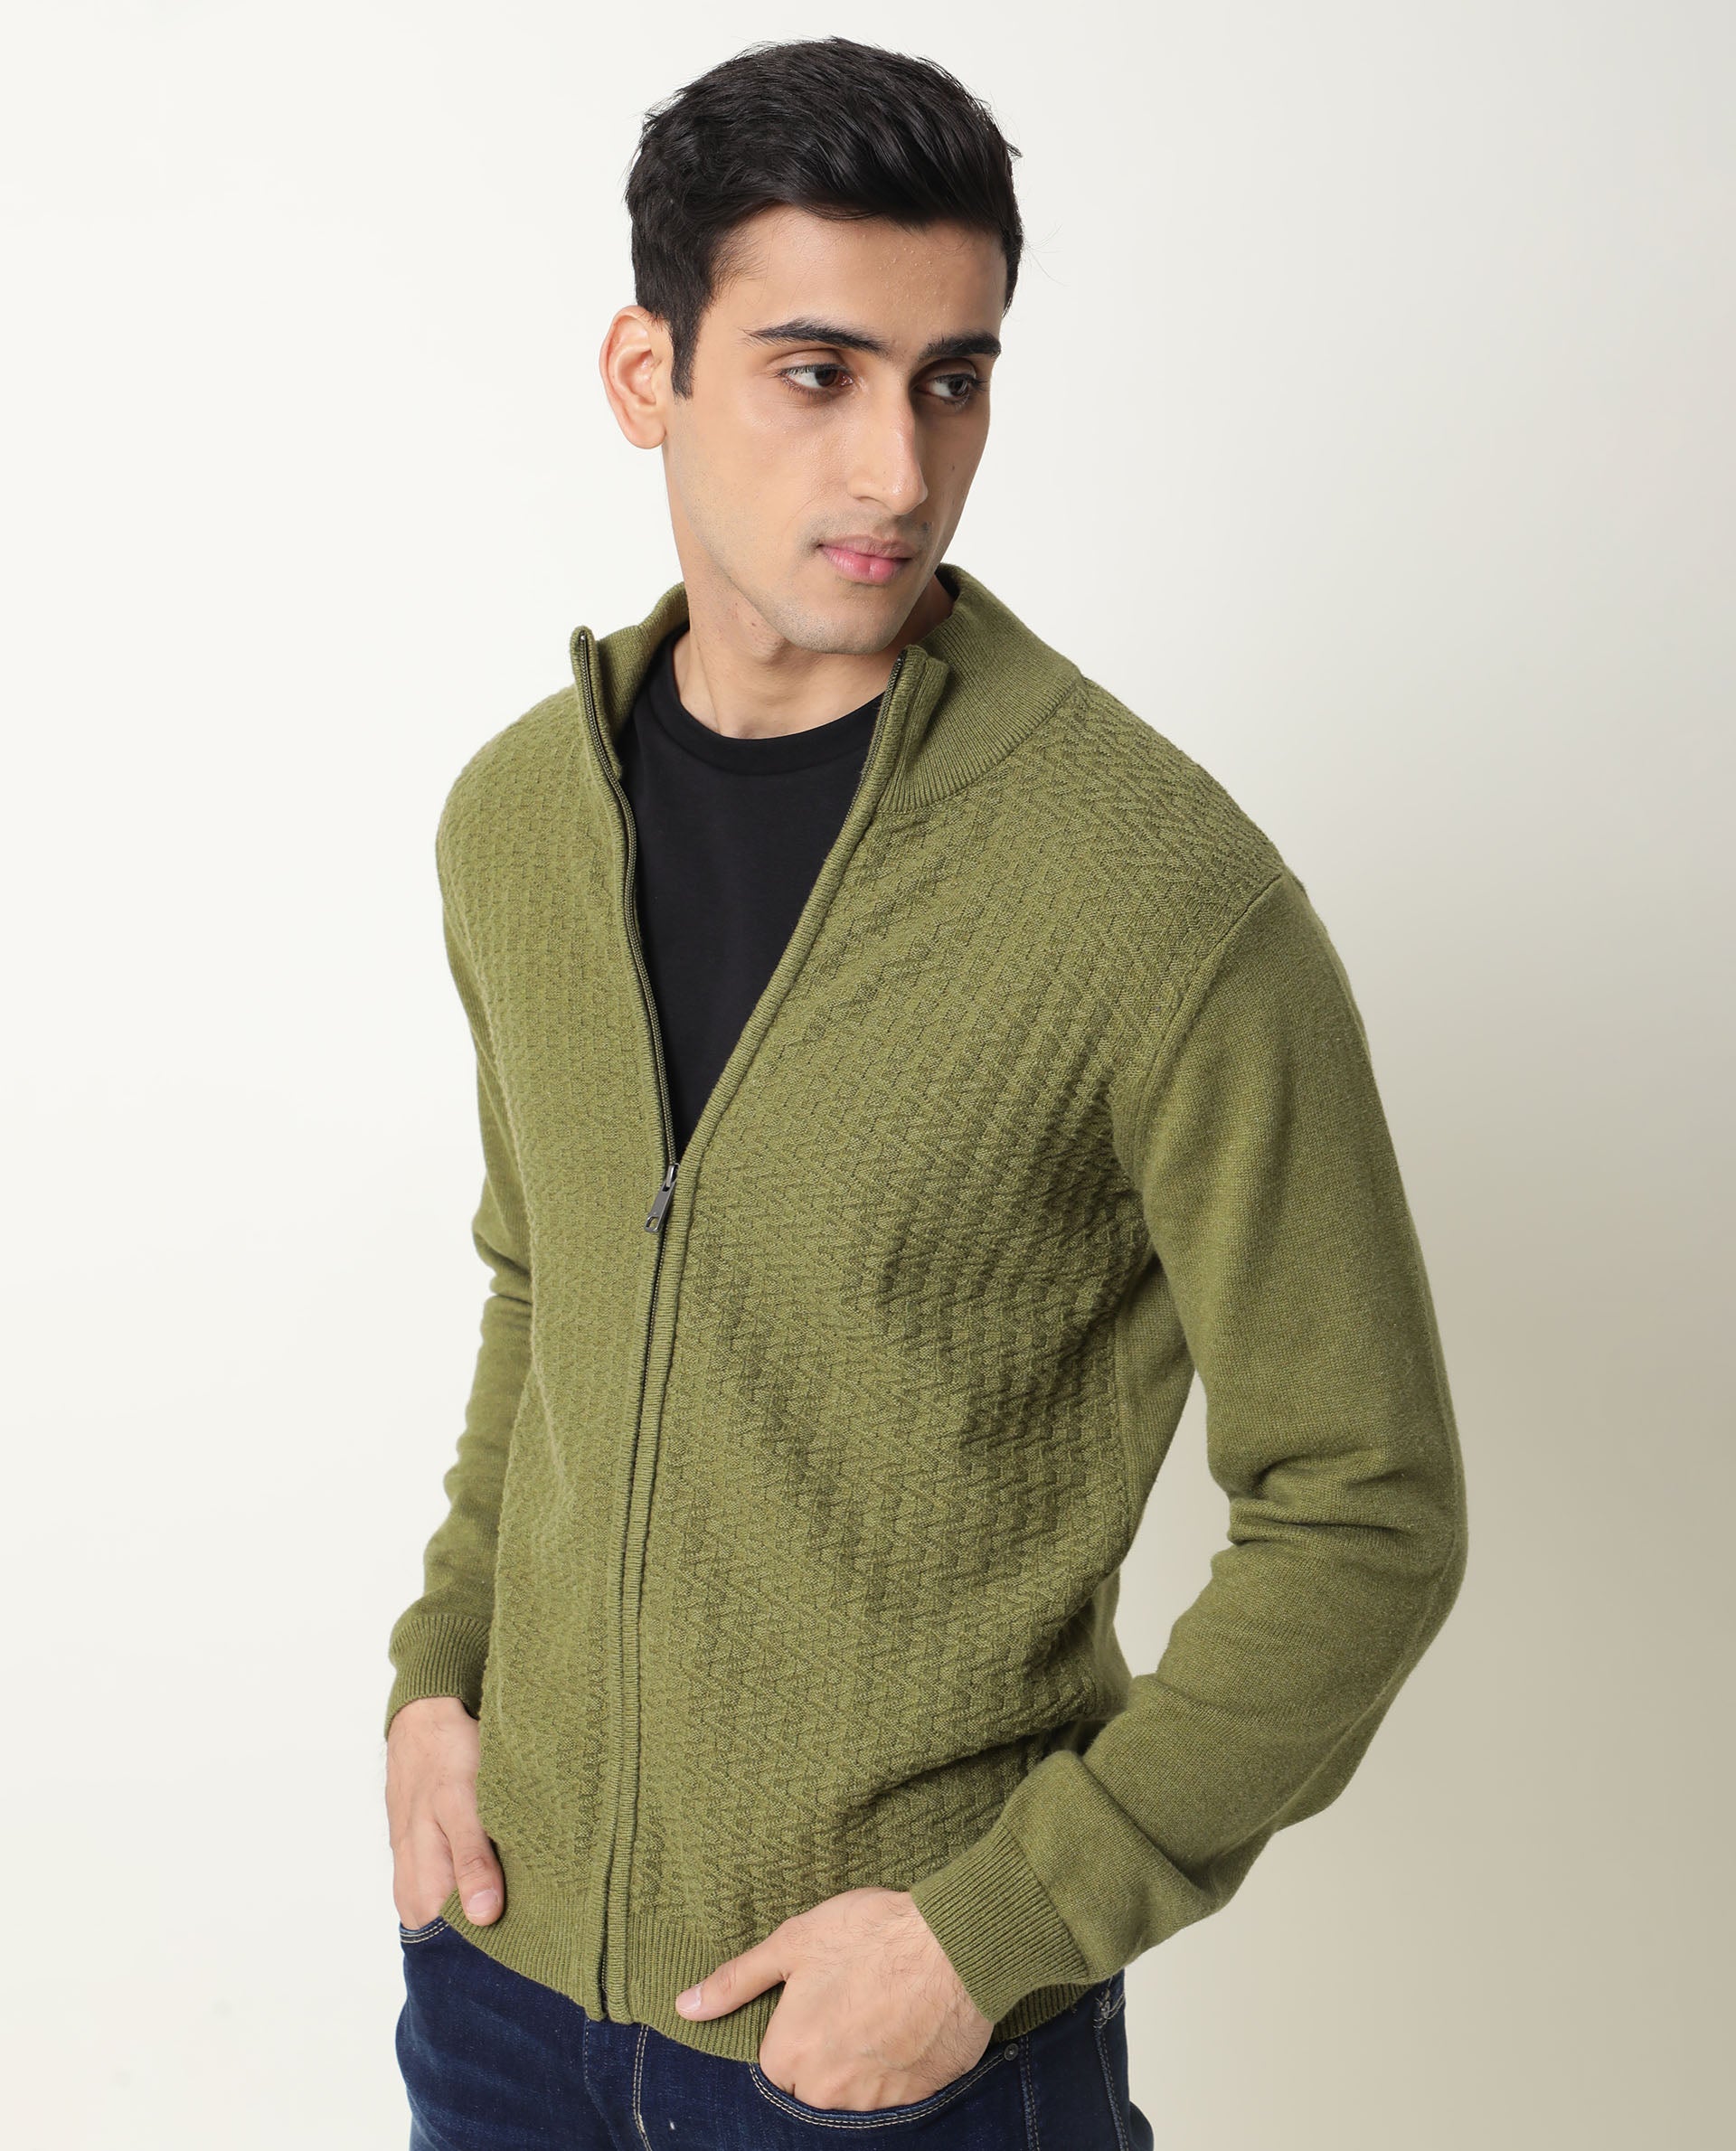 Short Men's Fine Gauge V-Neck Sweater - Navy & Black – ForTheFit.com